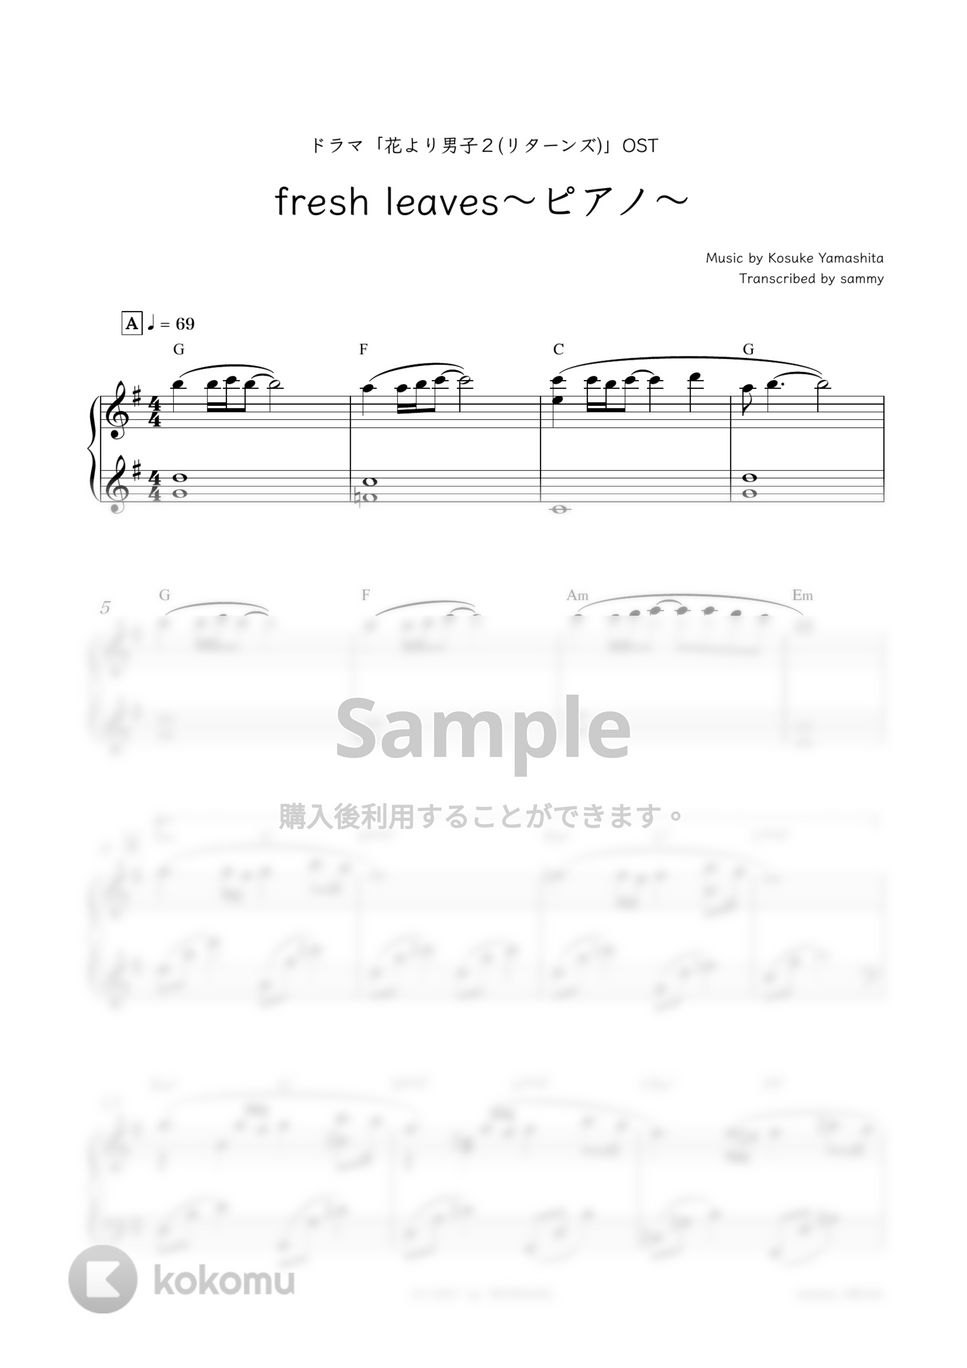 ドラマ『花より男子２(リターンズ)』OST - fresh leaves〜ピアノ〜 by sammy